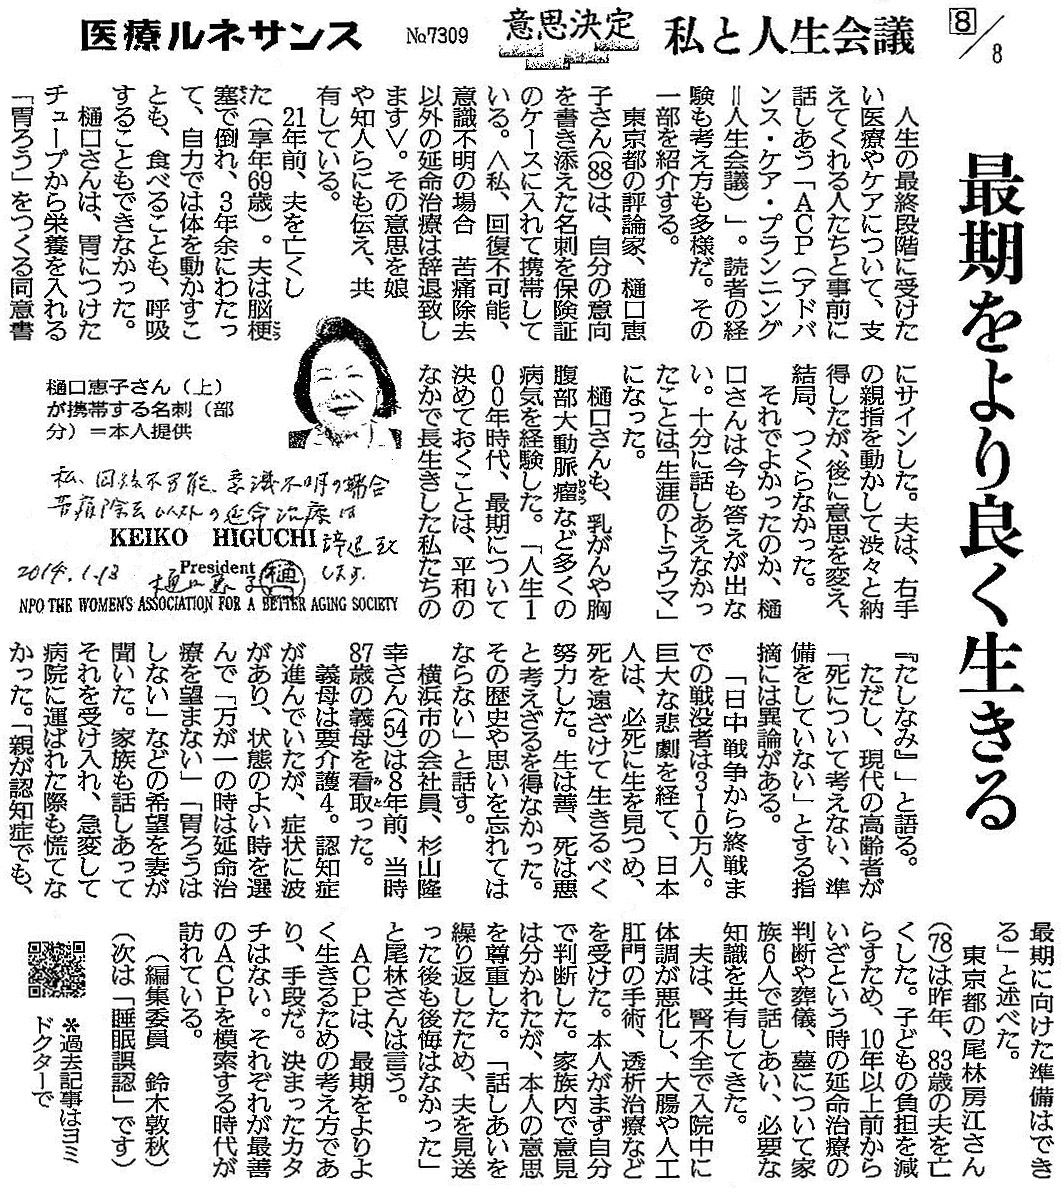 読売新聞 2020年6月23日 掲載記事